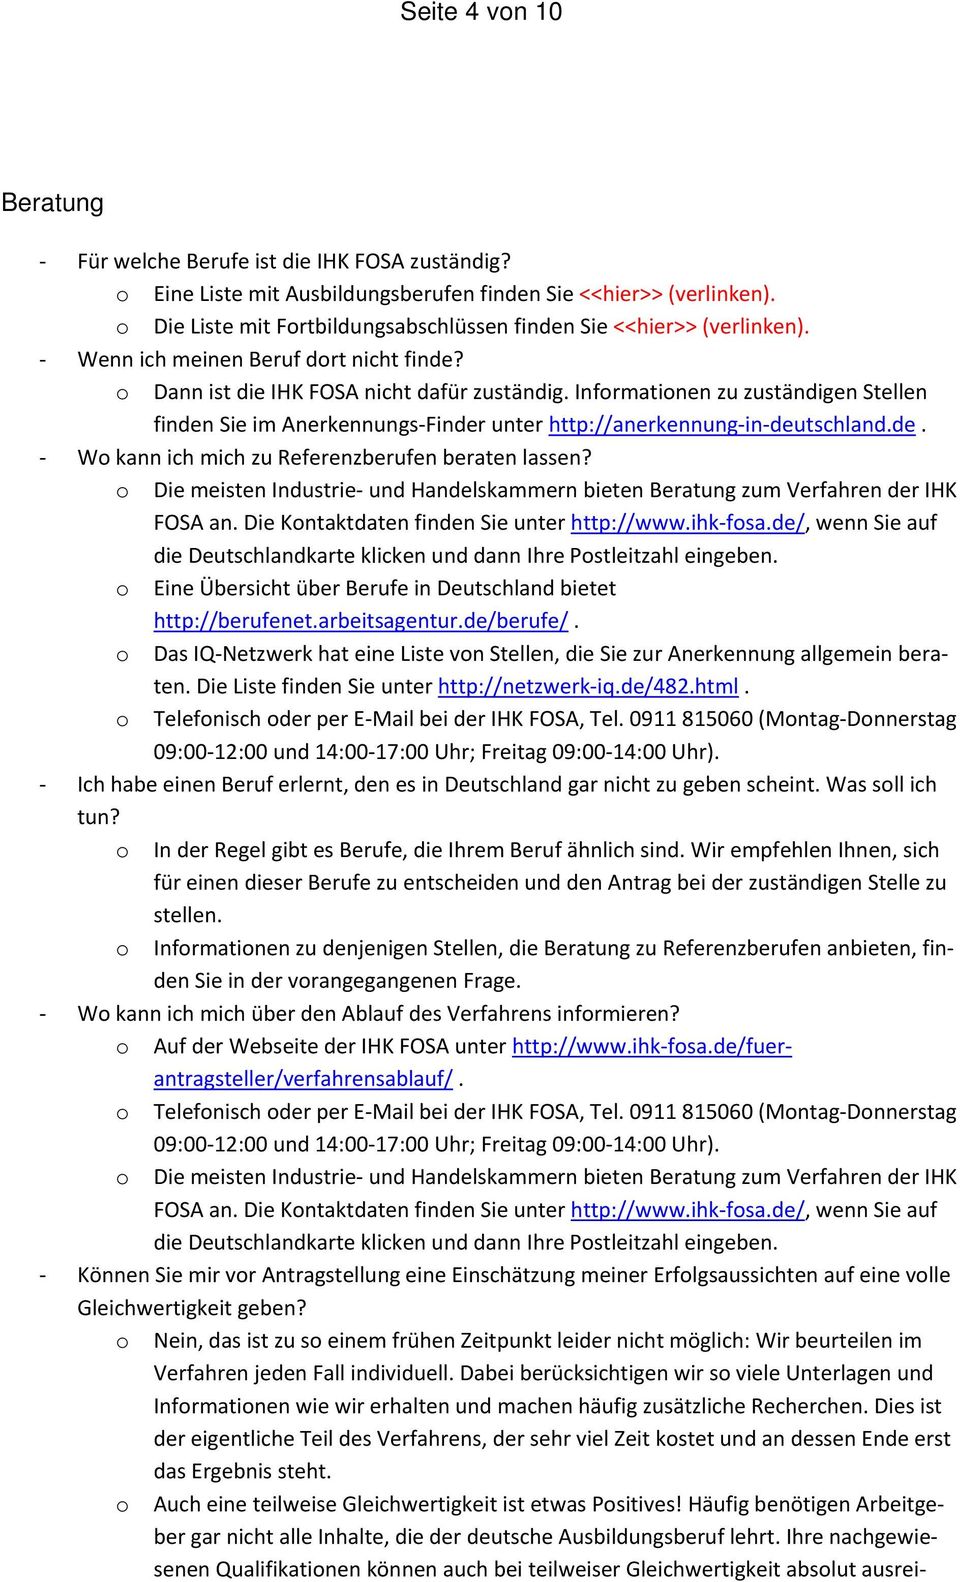 Informationen zu zuständigen Stellen finden Sie im Anerkennungs Finder unter http://anerkennung in deutschland.de. Wo kann ich mich zu Referenzberufen beraten lassen?